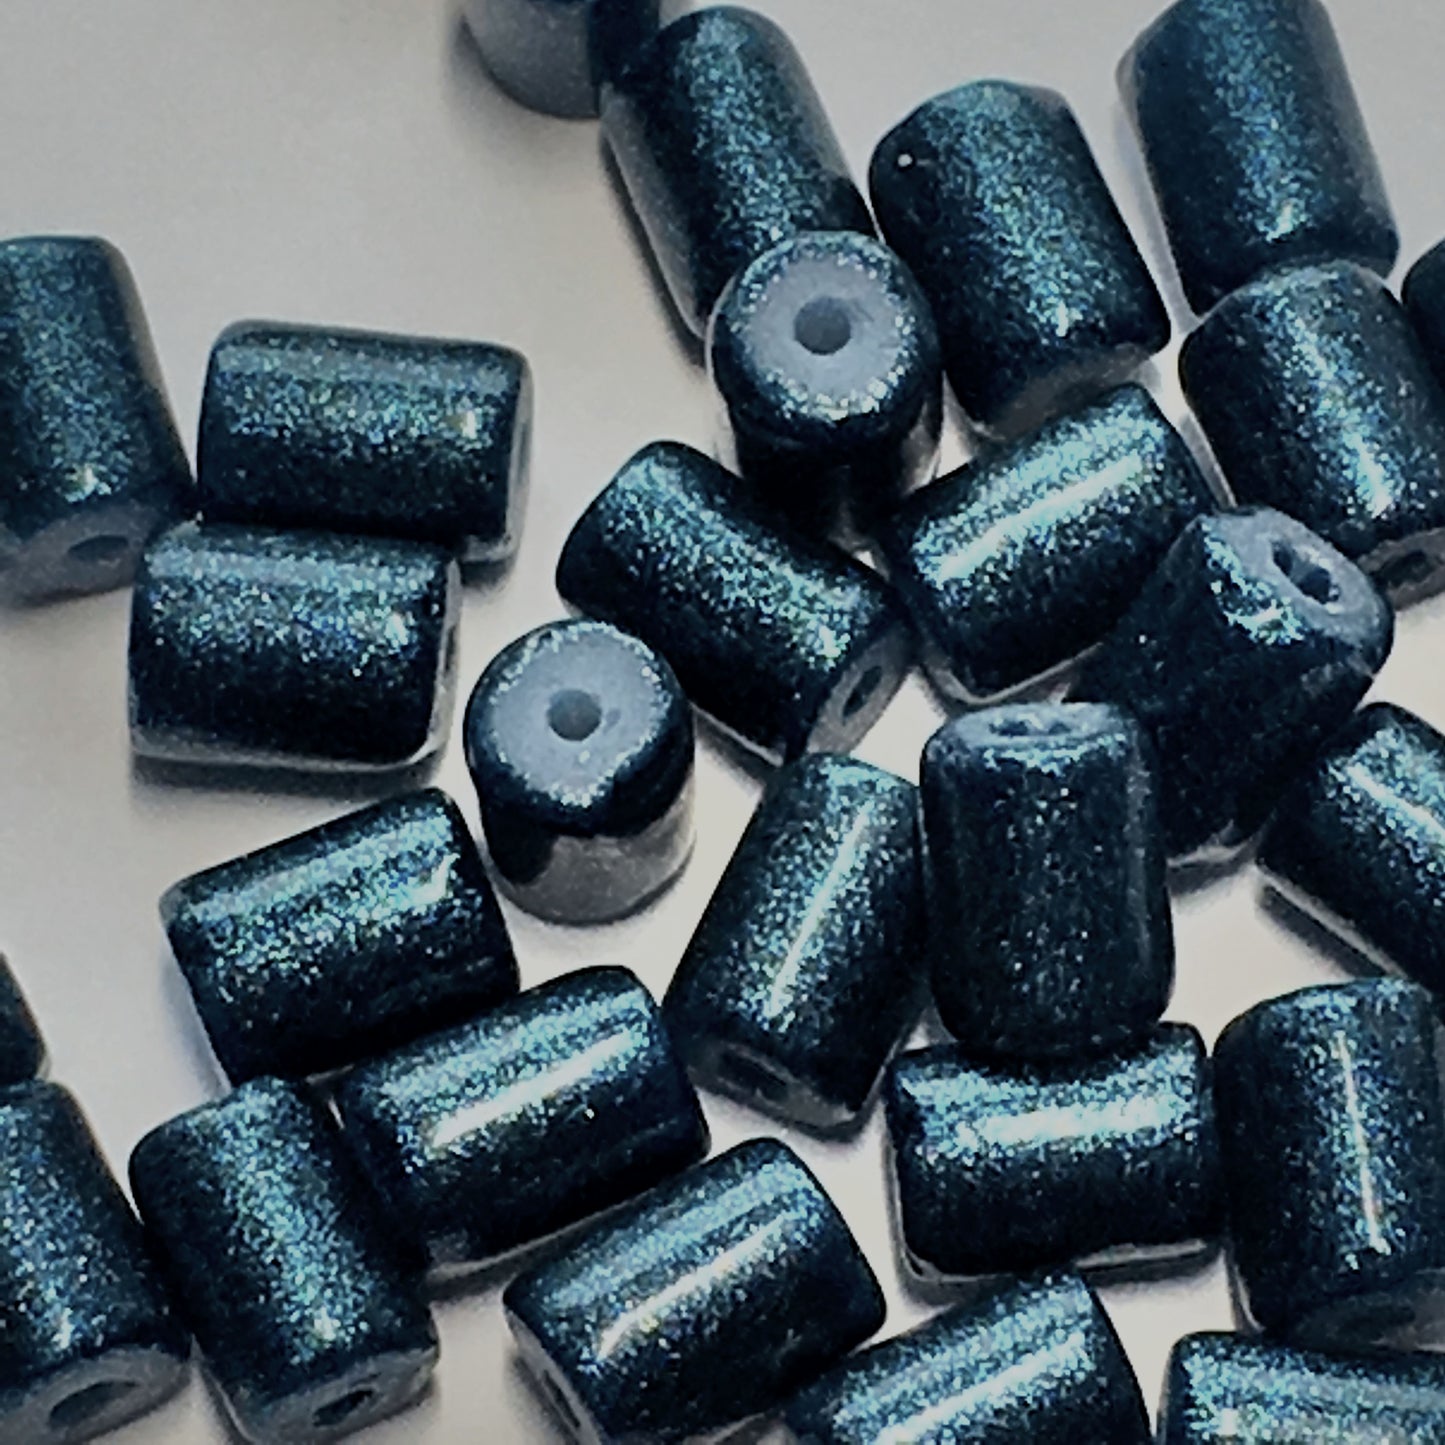 Dark Metallic Blue Painted Glass Tube Beads, 6 x 4 mm, 30 Beads